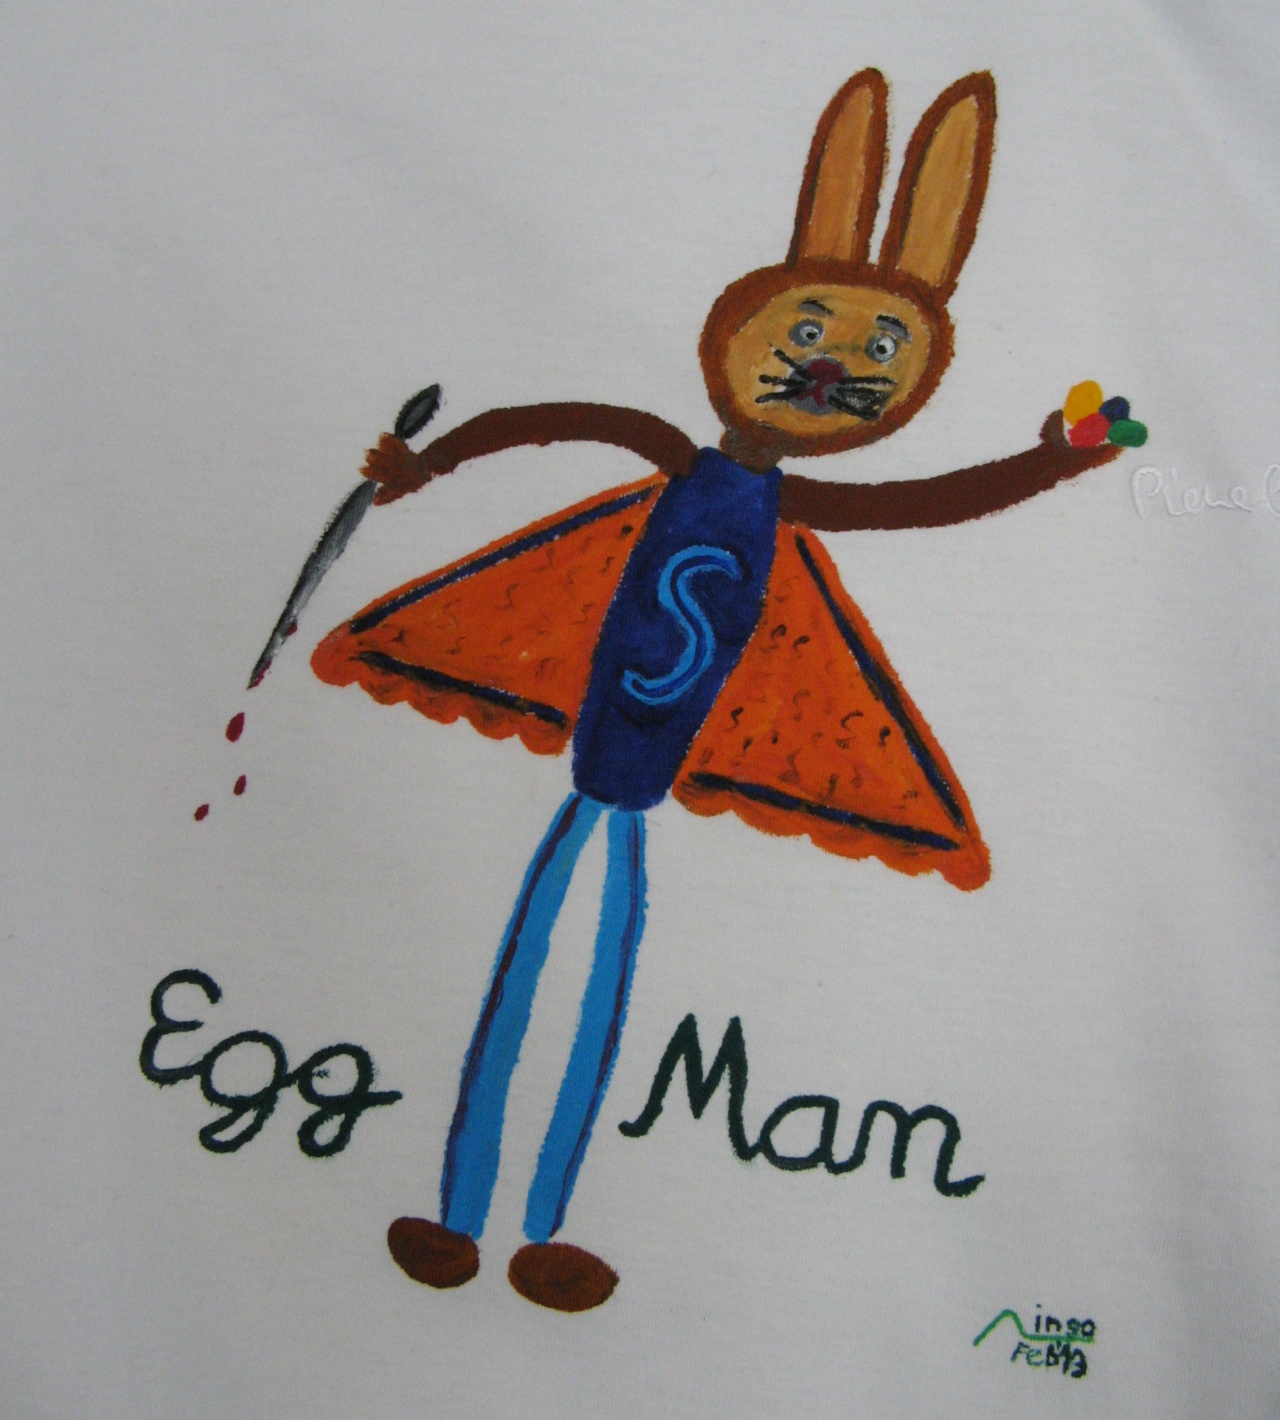 Egg Man closeup